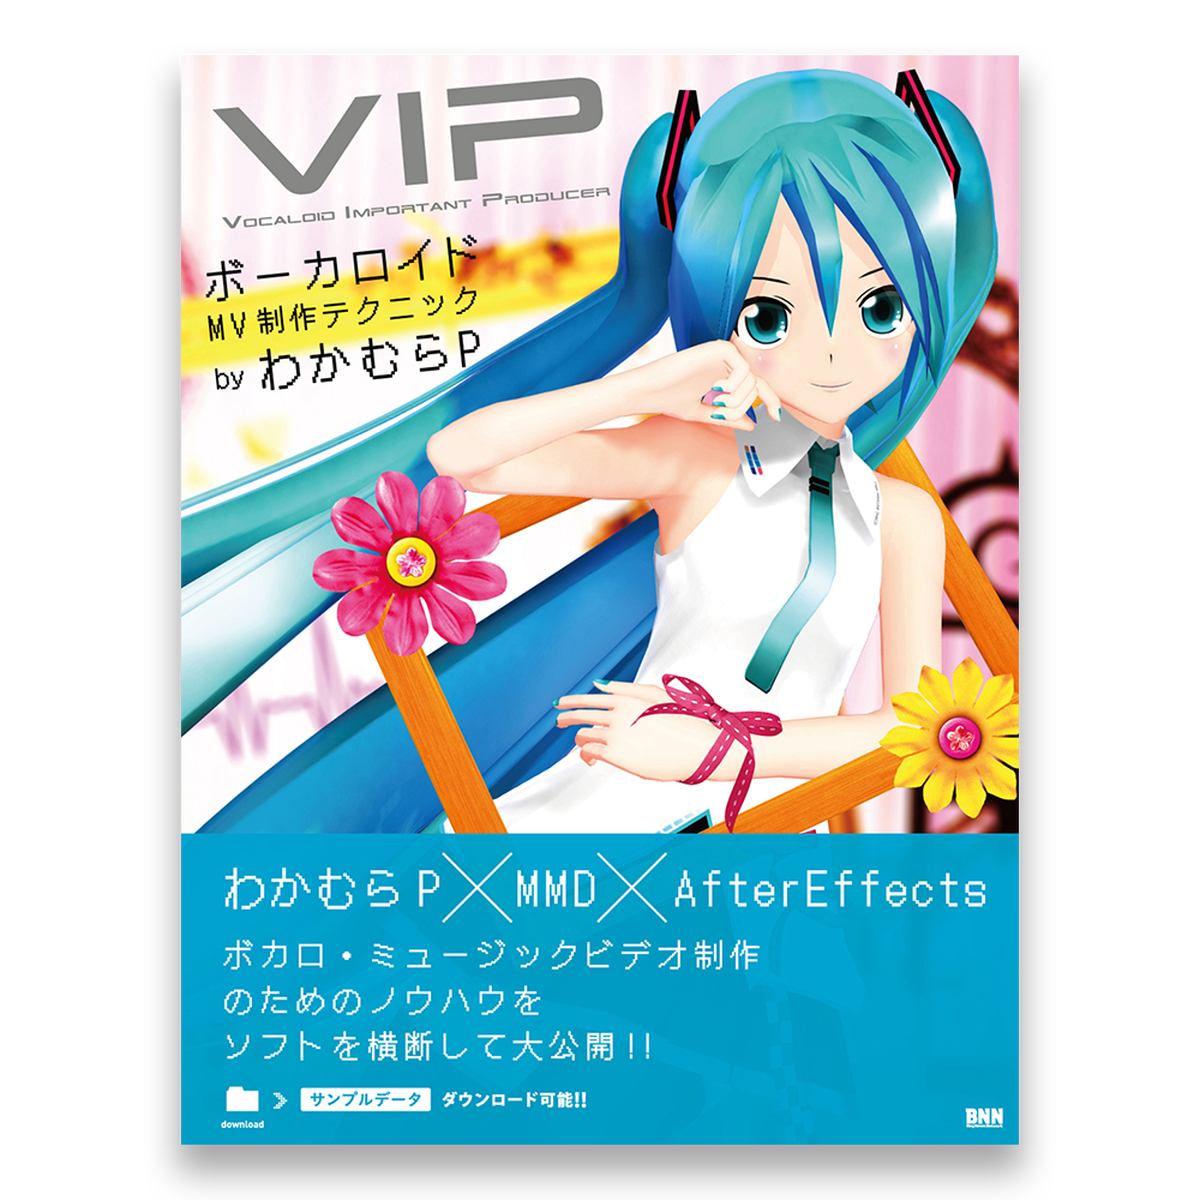 Vip Vocaloid Important Producer ボーカロイドmv制作テクニック Bnnオンラインストア